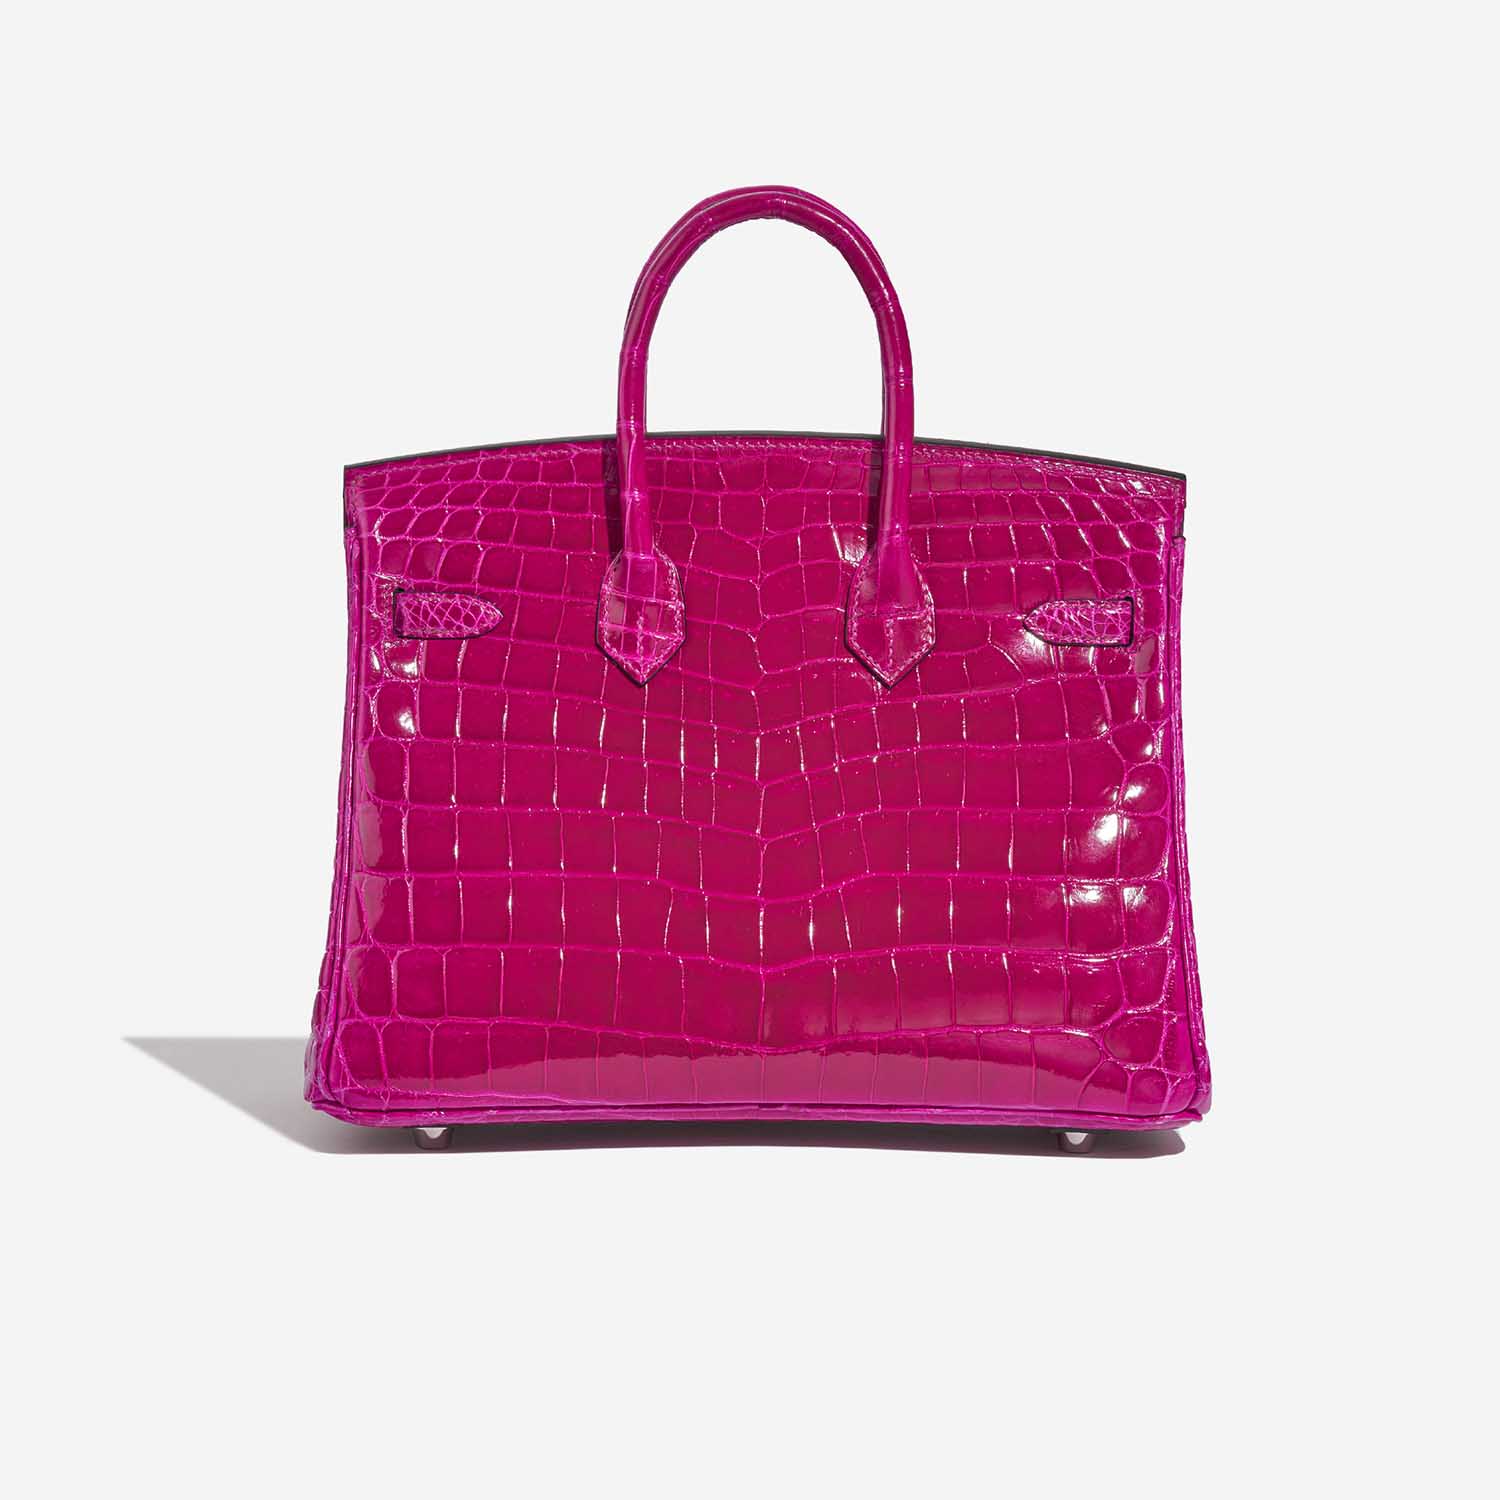 Hermès Birkin 25 RosePourpre Back | Verkaufen Sie Ihre Designertasche auf Saclab.com